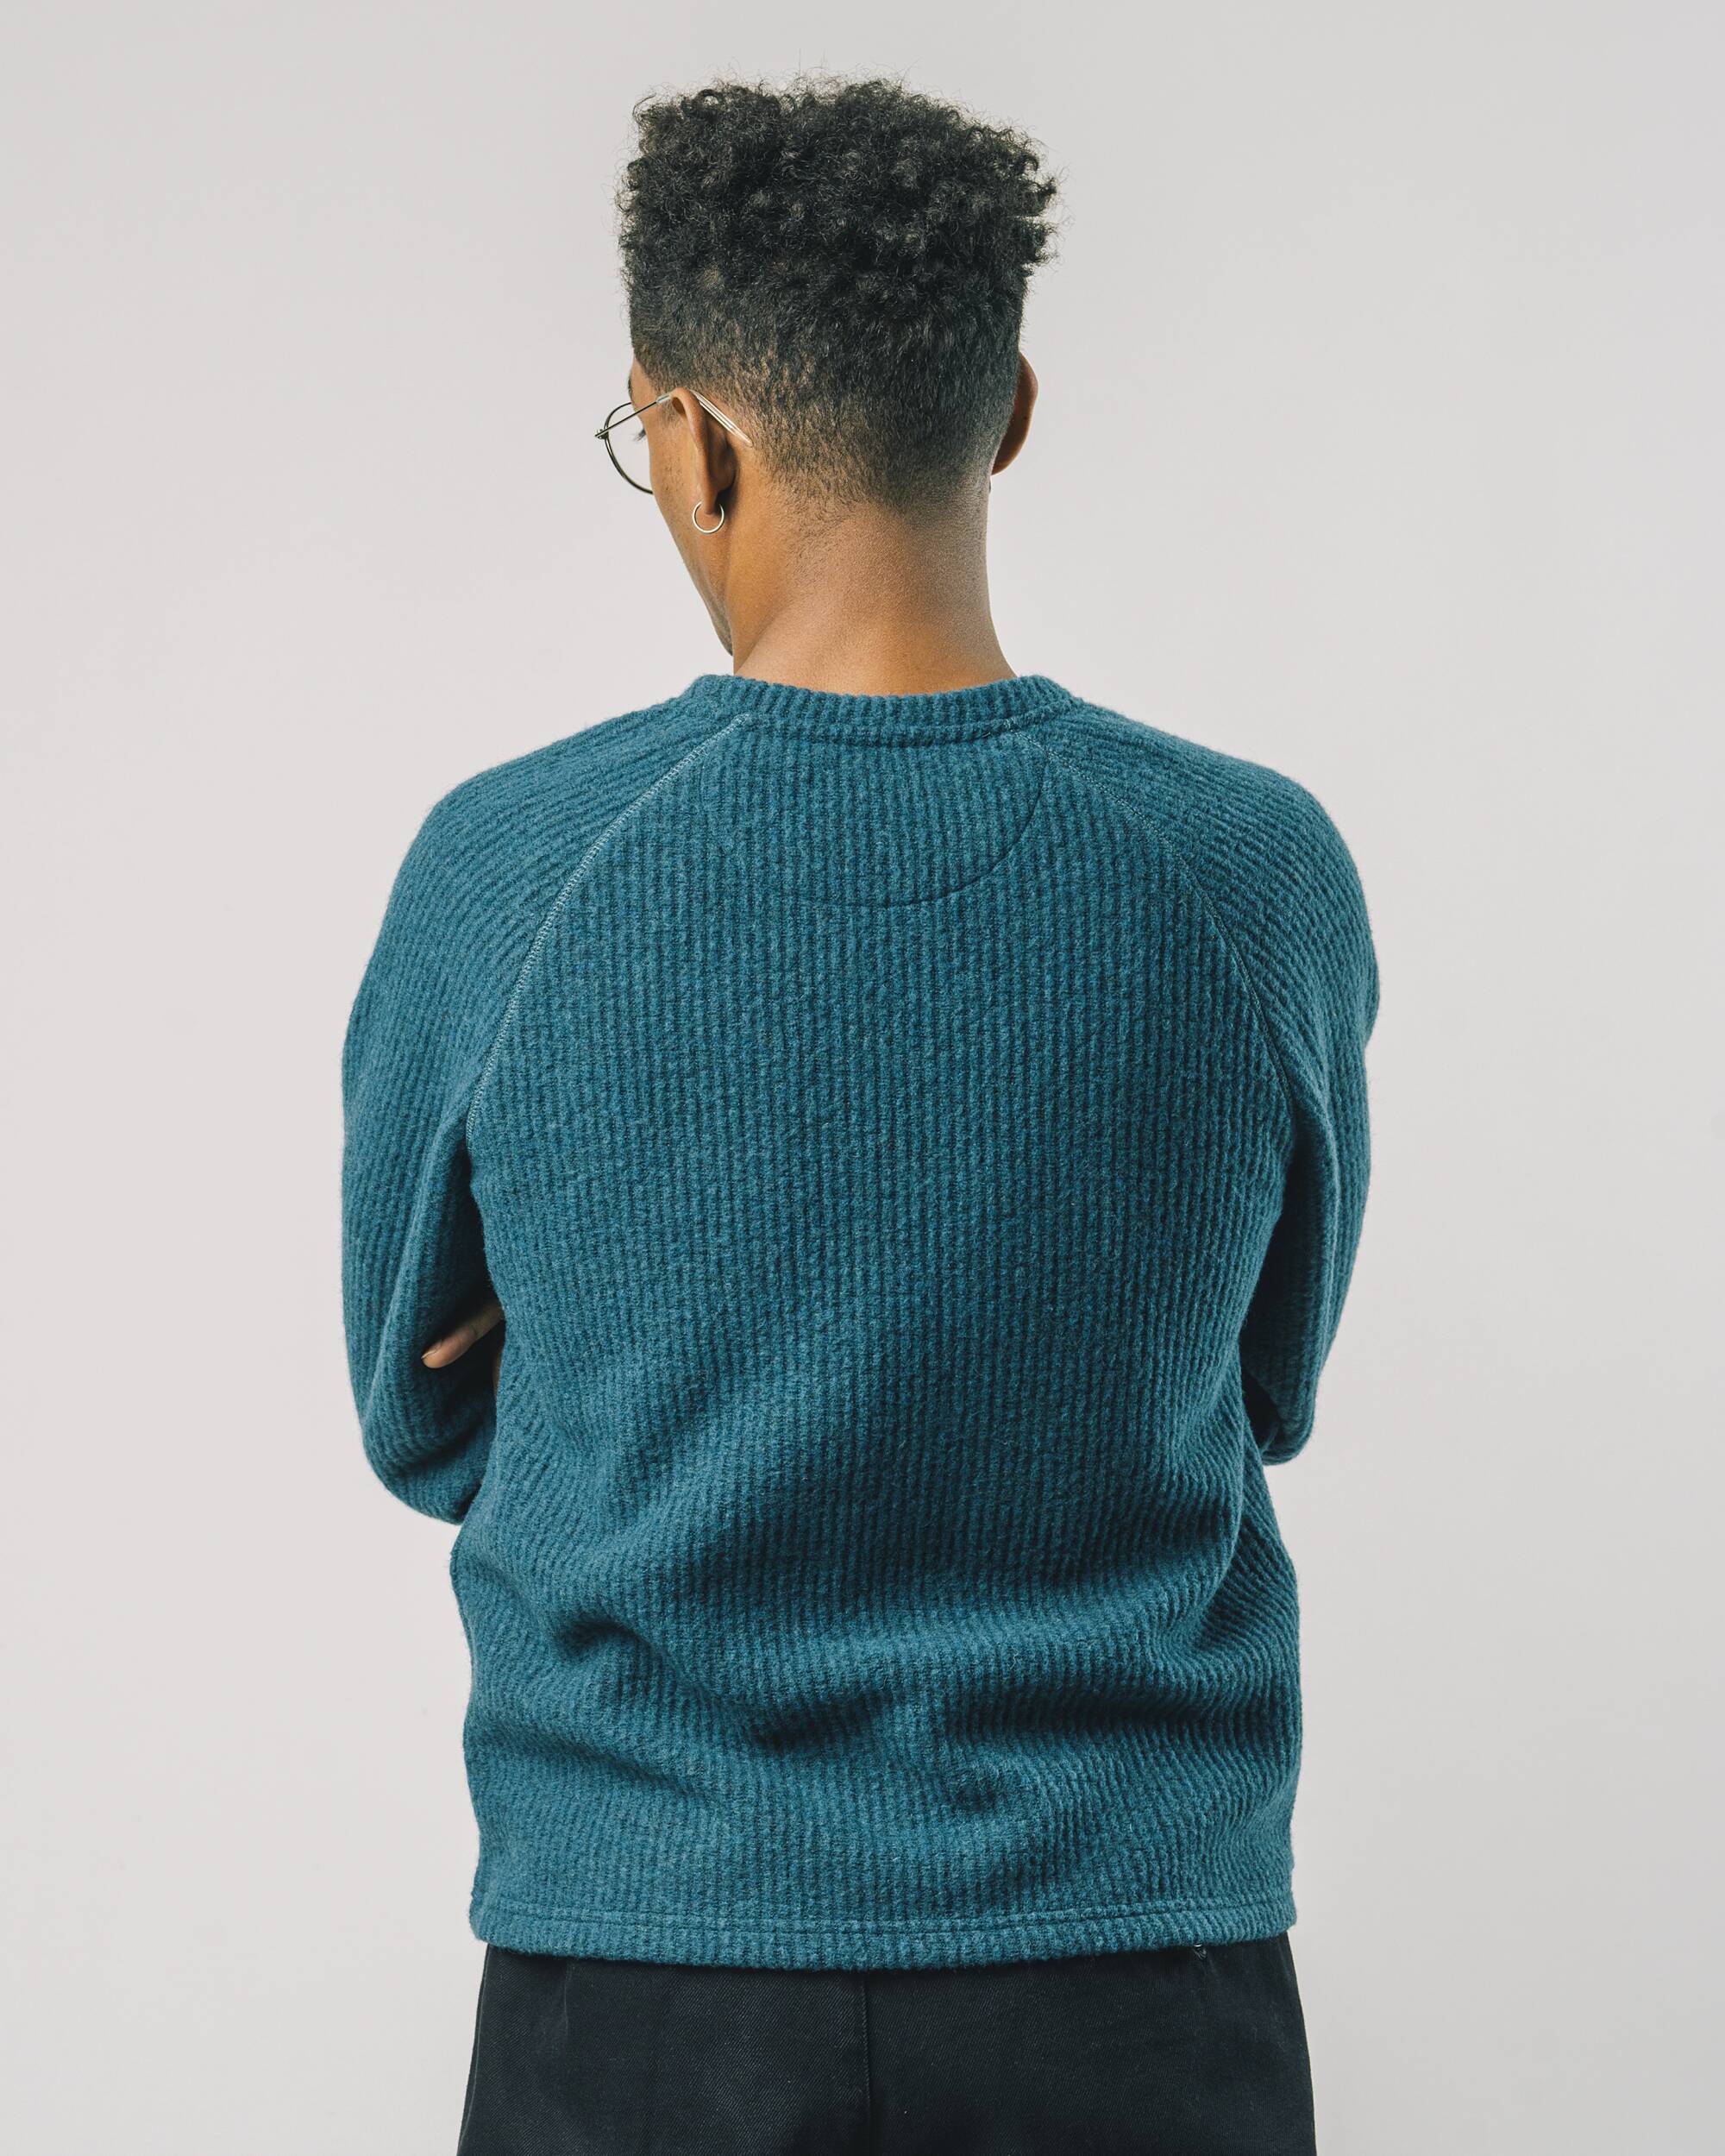 Sweatshirt "Petrol" in blau aus 100% recycelten, edelen Fasern von Brava Fabrics